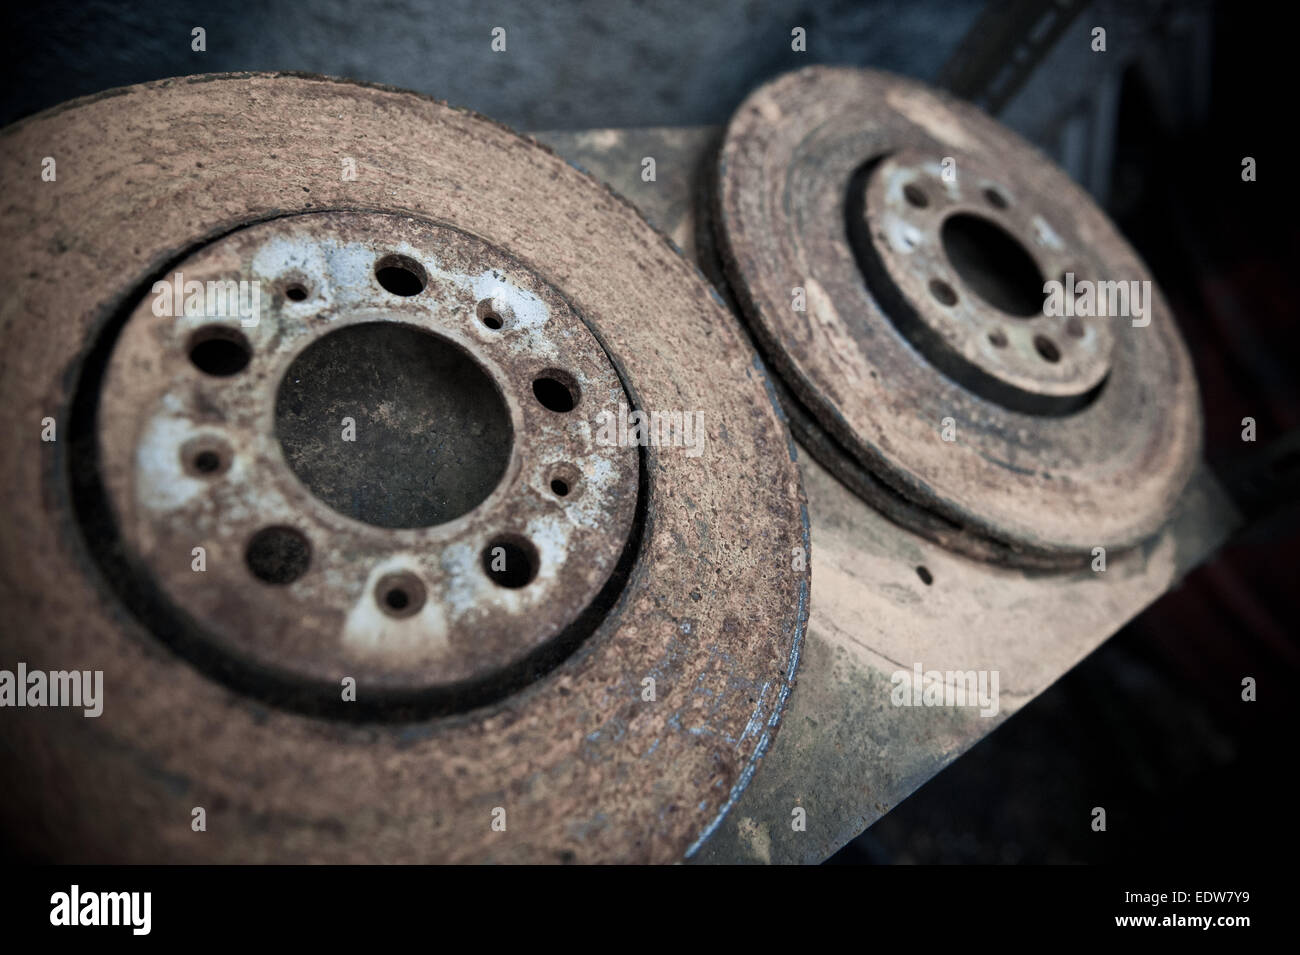 Rostige alte Bremsscheiben Stockfotografie - Alamy